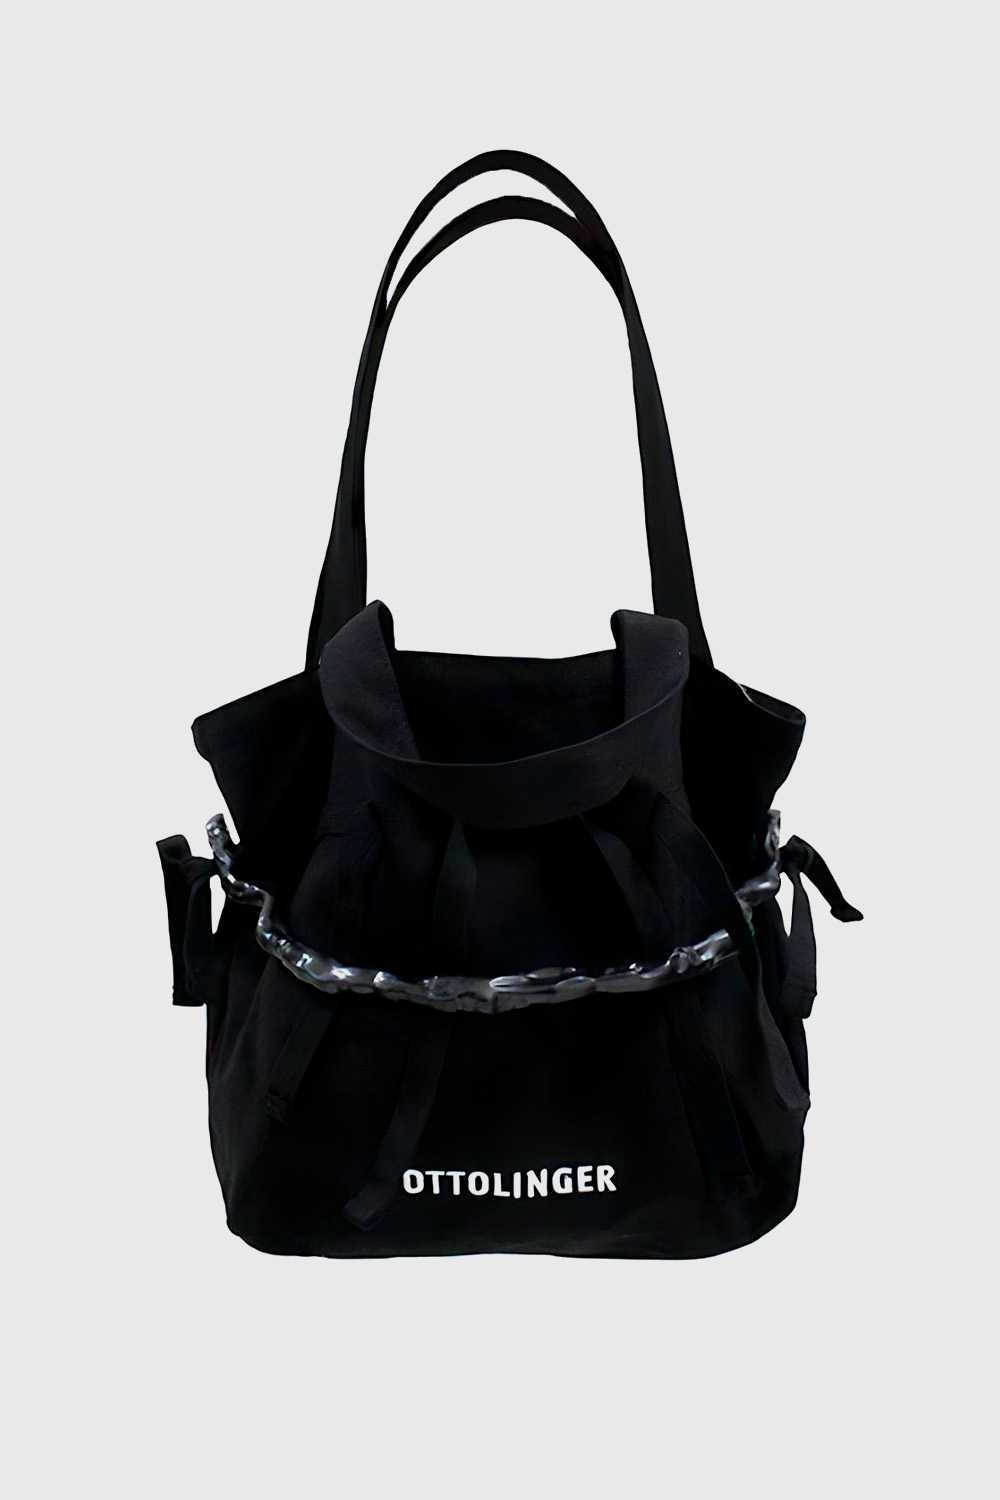 OTTOLINGER Denim Tote Bag Black | WoodWood.com